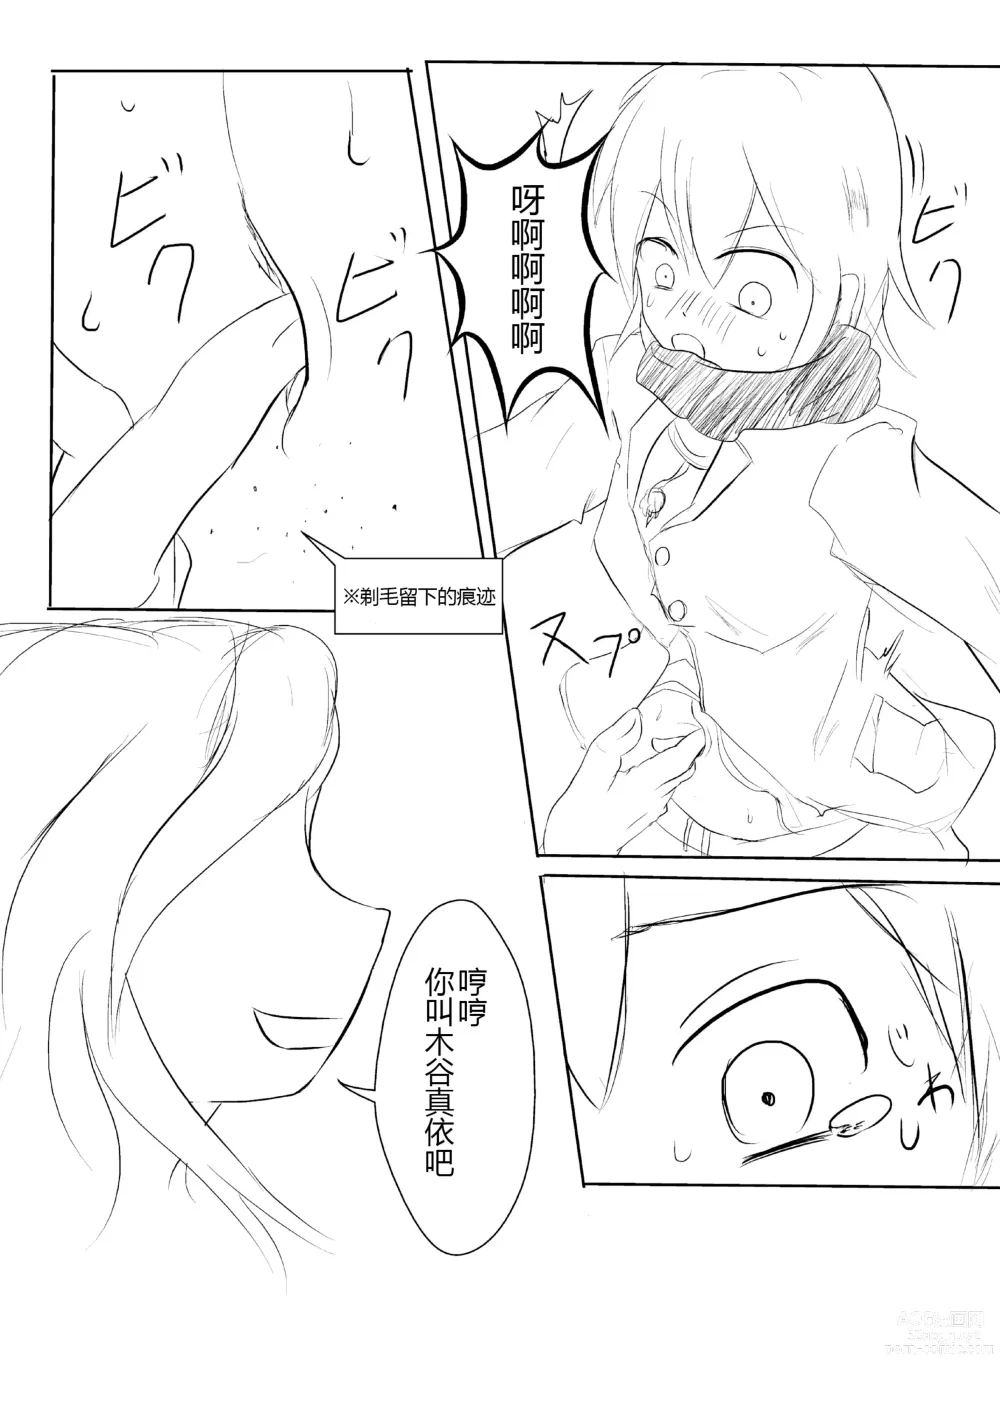 Page 6 of doujinshi hesomazixyo1